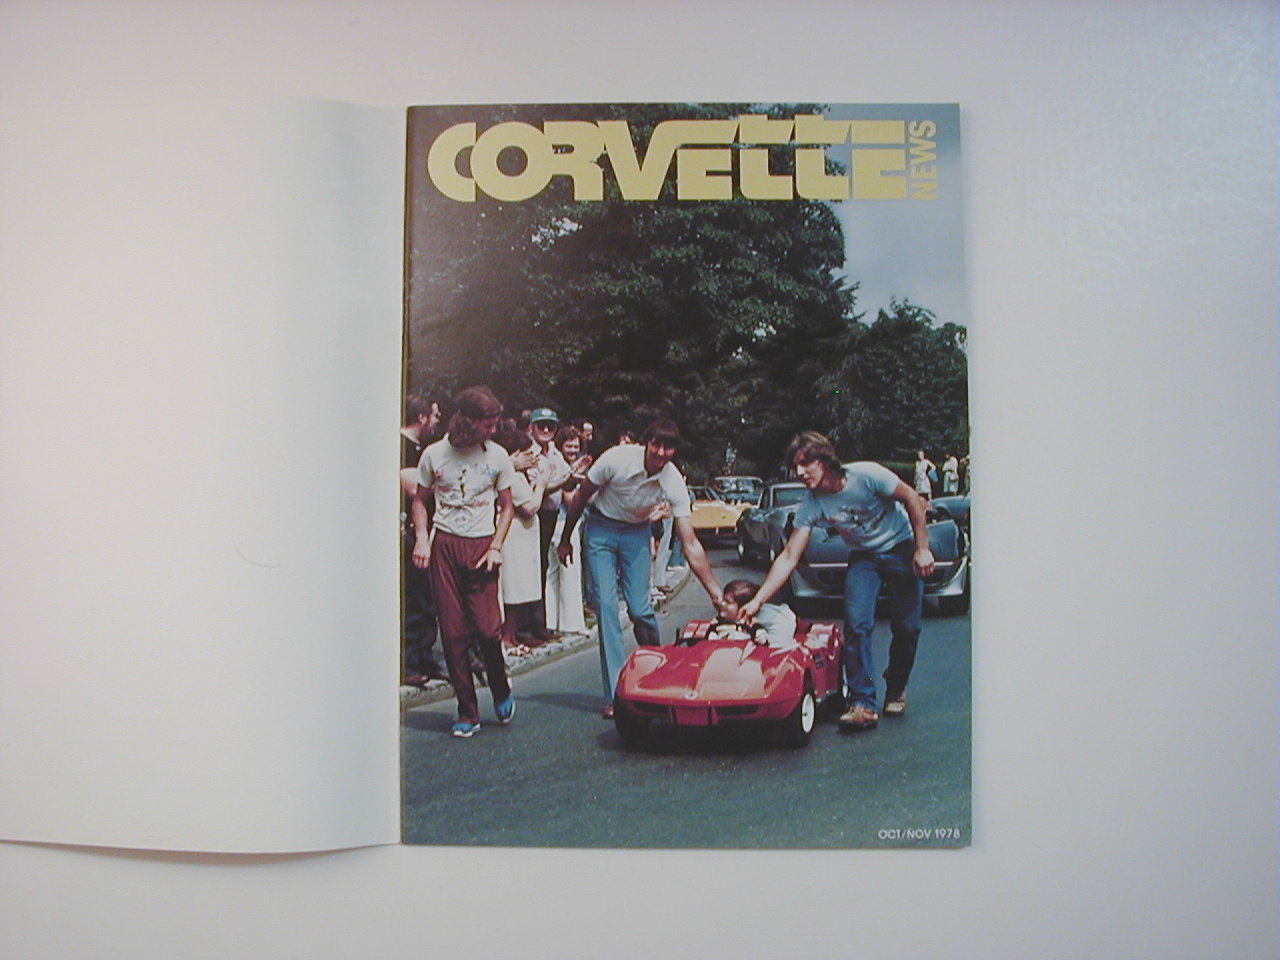 Corvette News Magazine Oct/Nov 1978